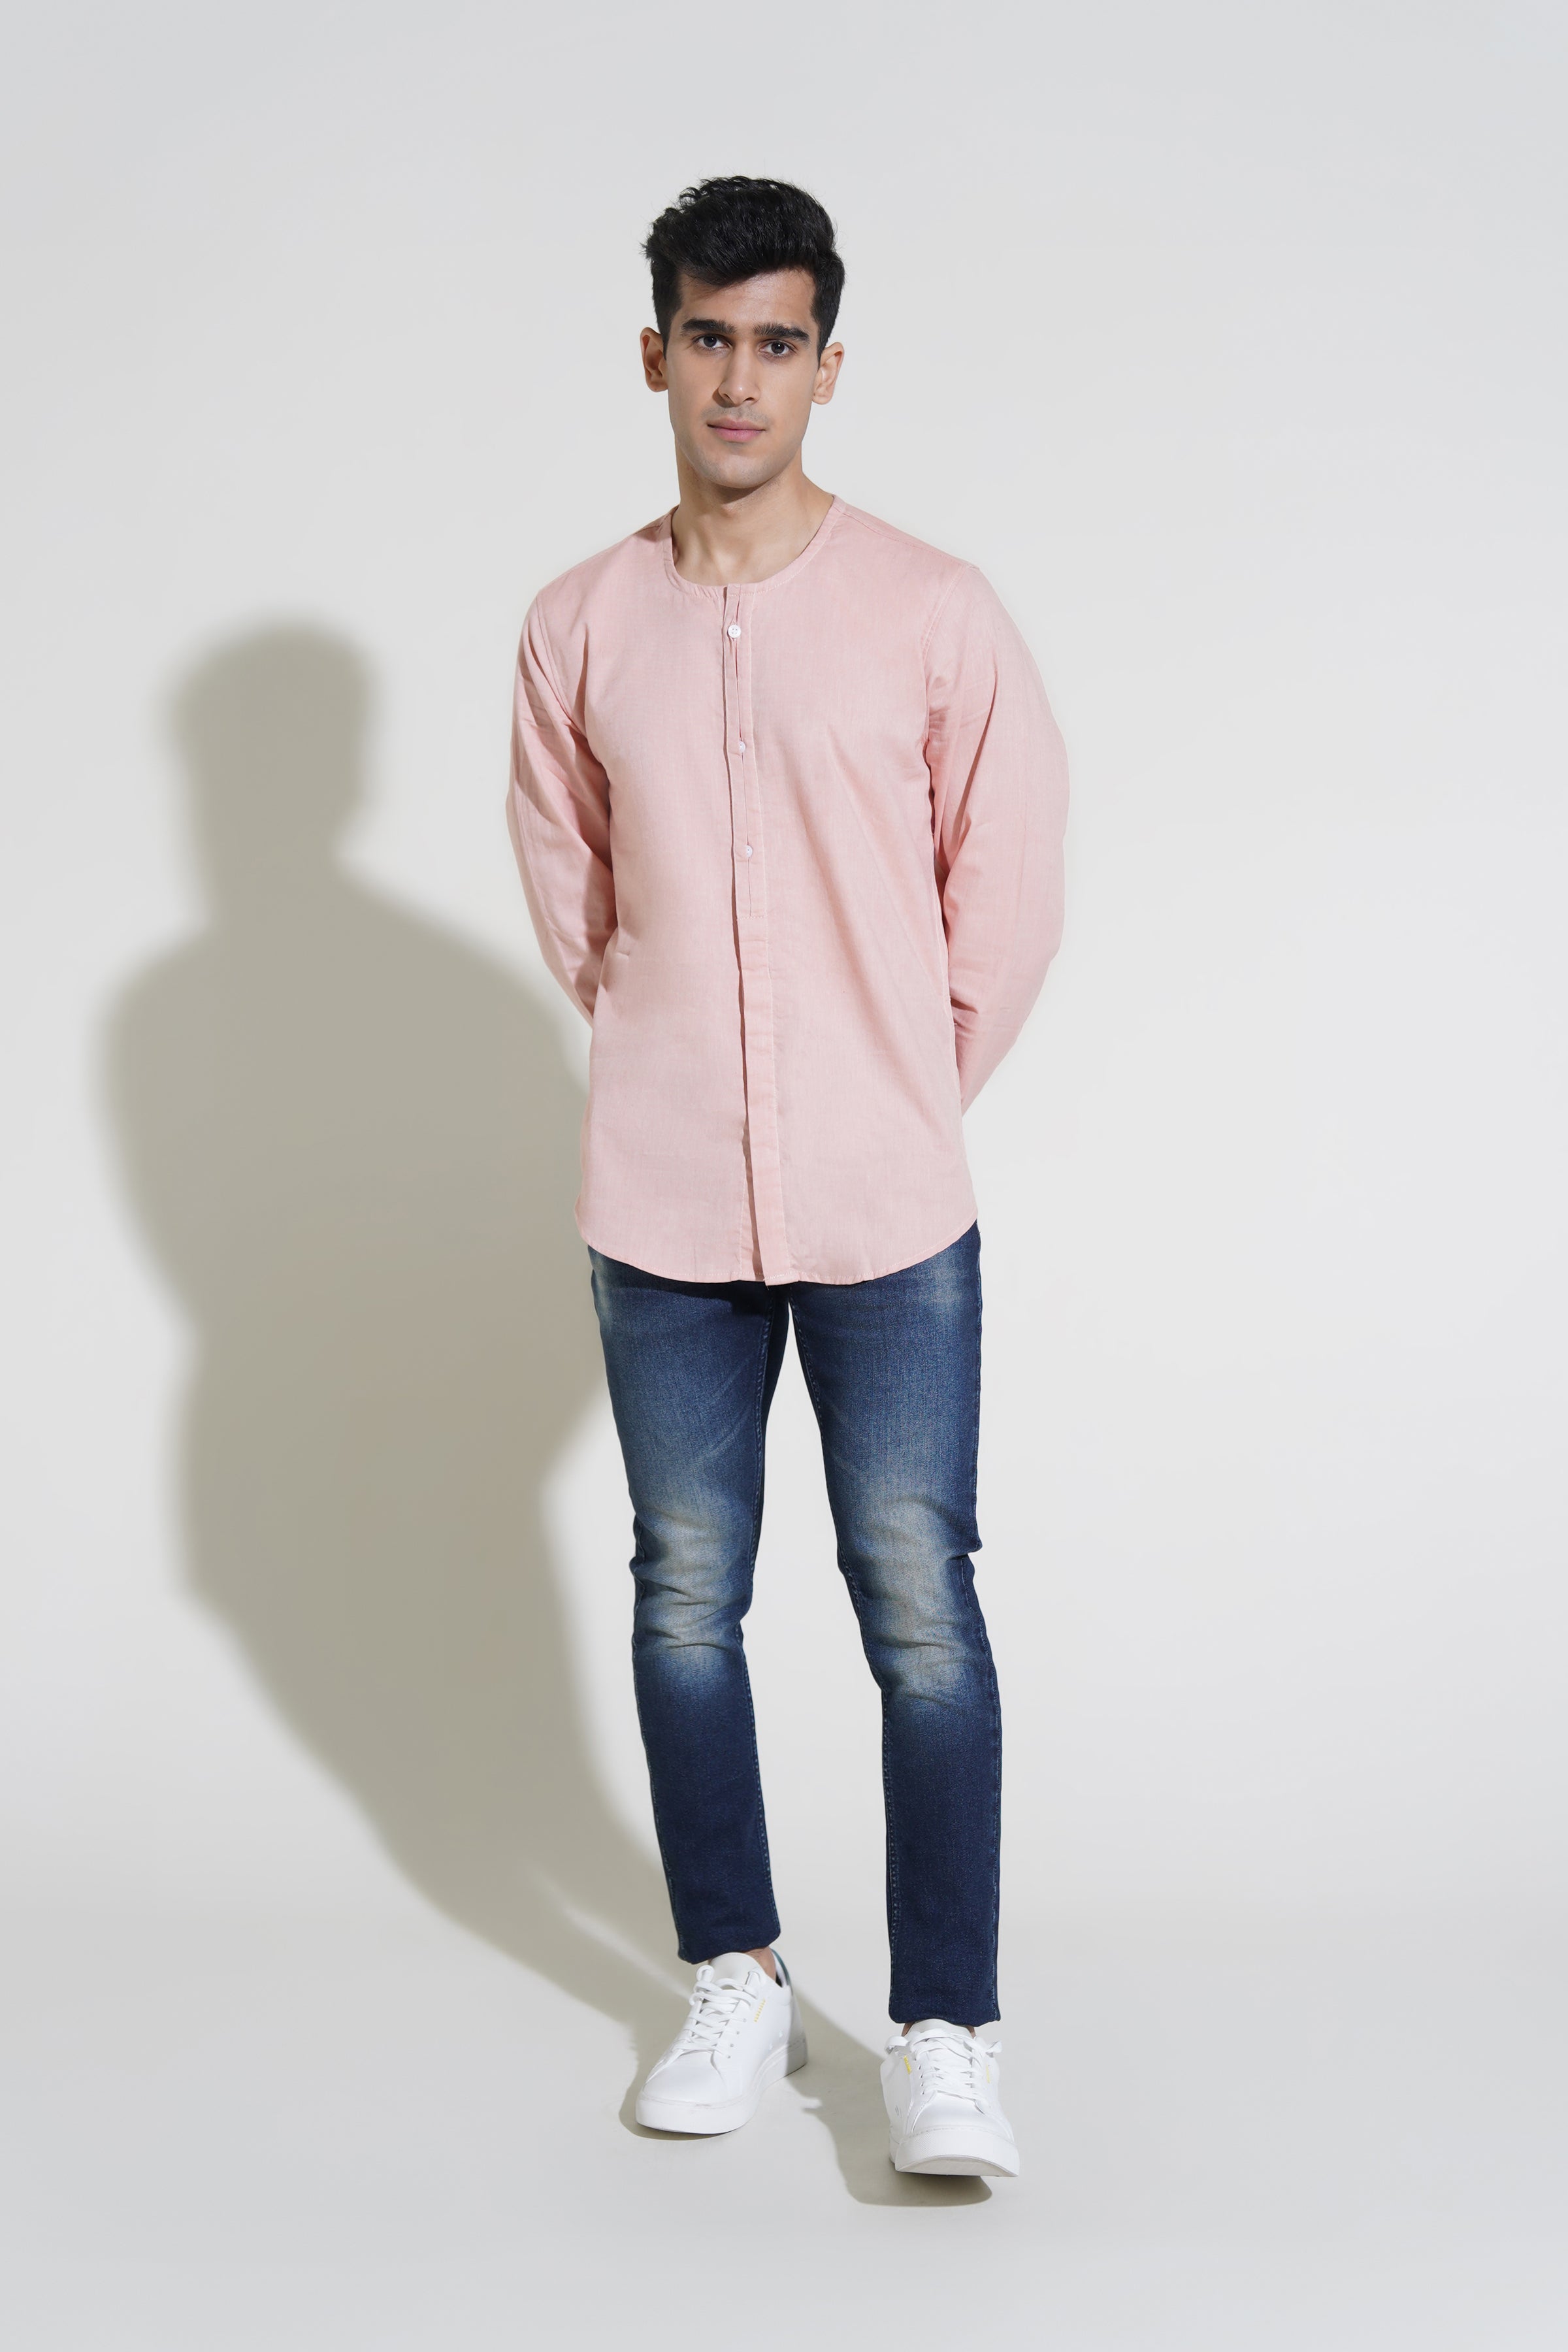 Pastel Pink Shirt